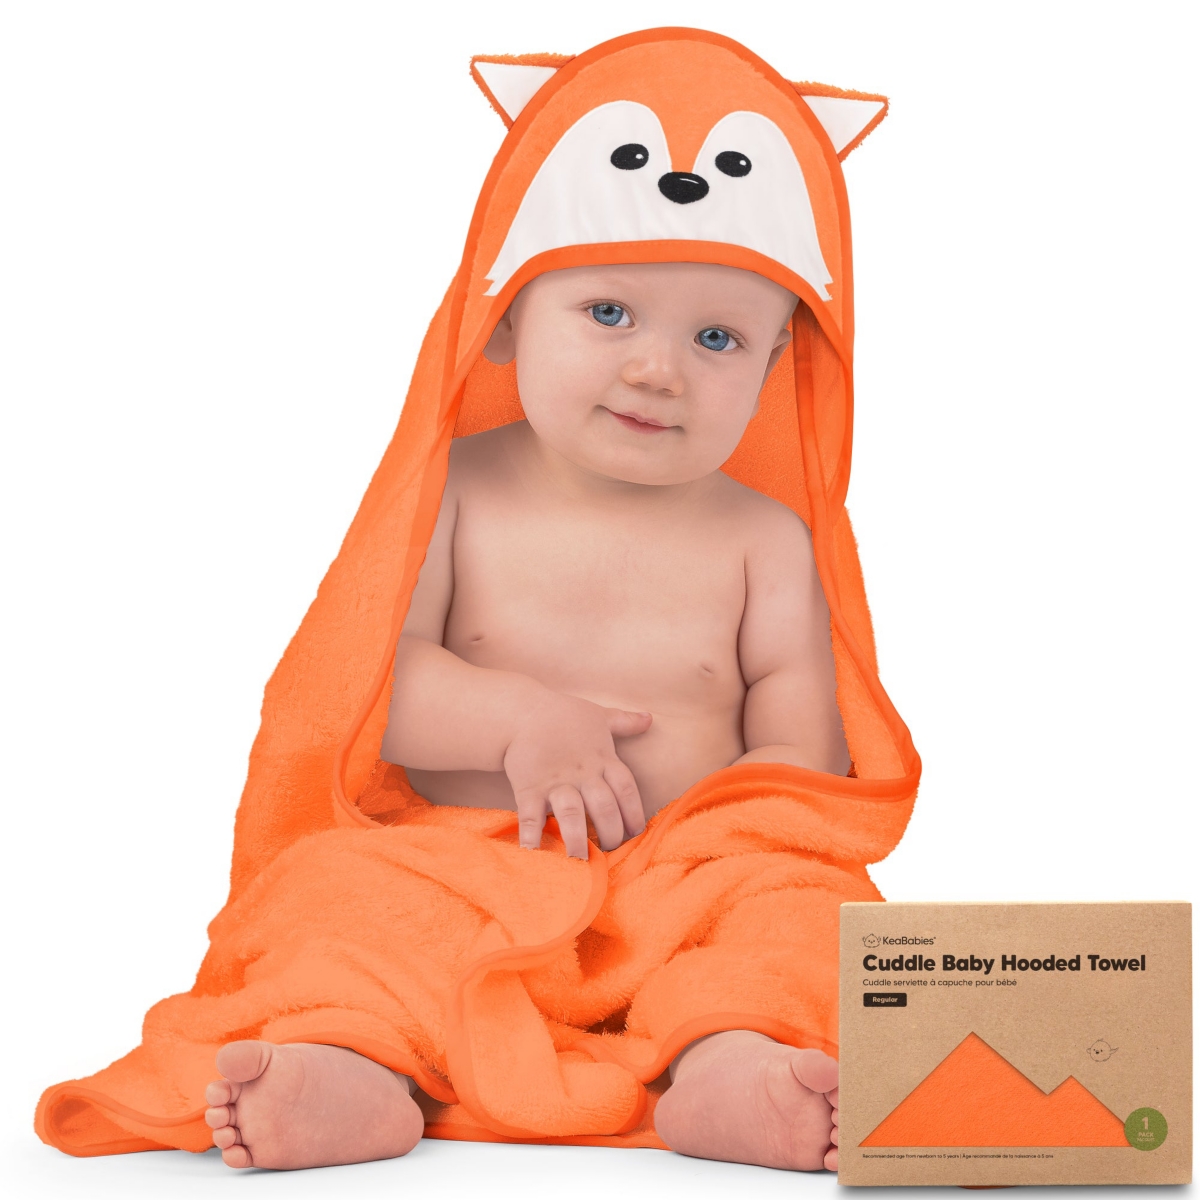 Keababies Cuddle Baby Hooded Towel, Organic Baby Bath Towel, Hooded Baby Towels, Baby Beach Towel For Newborn, In Fox